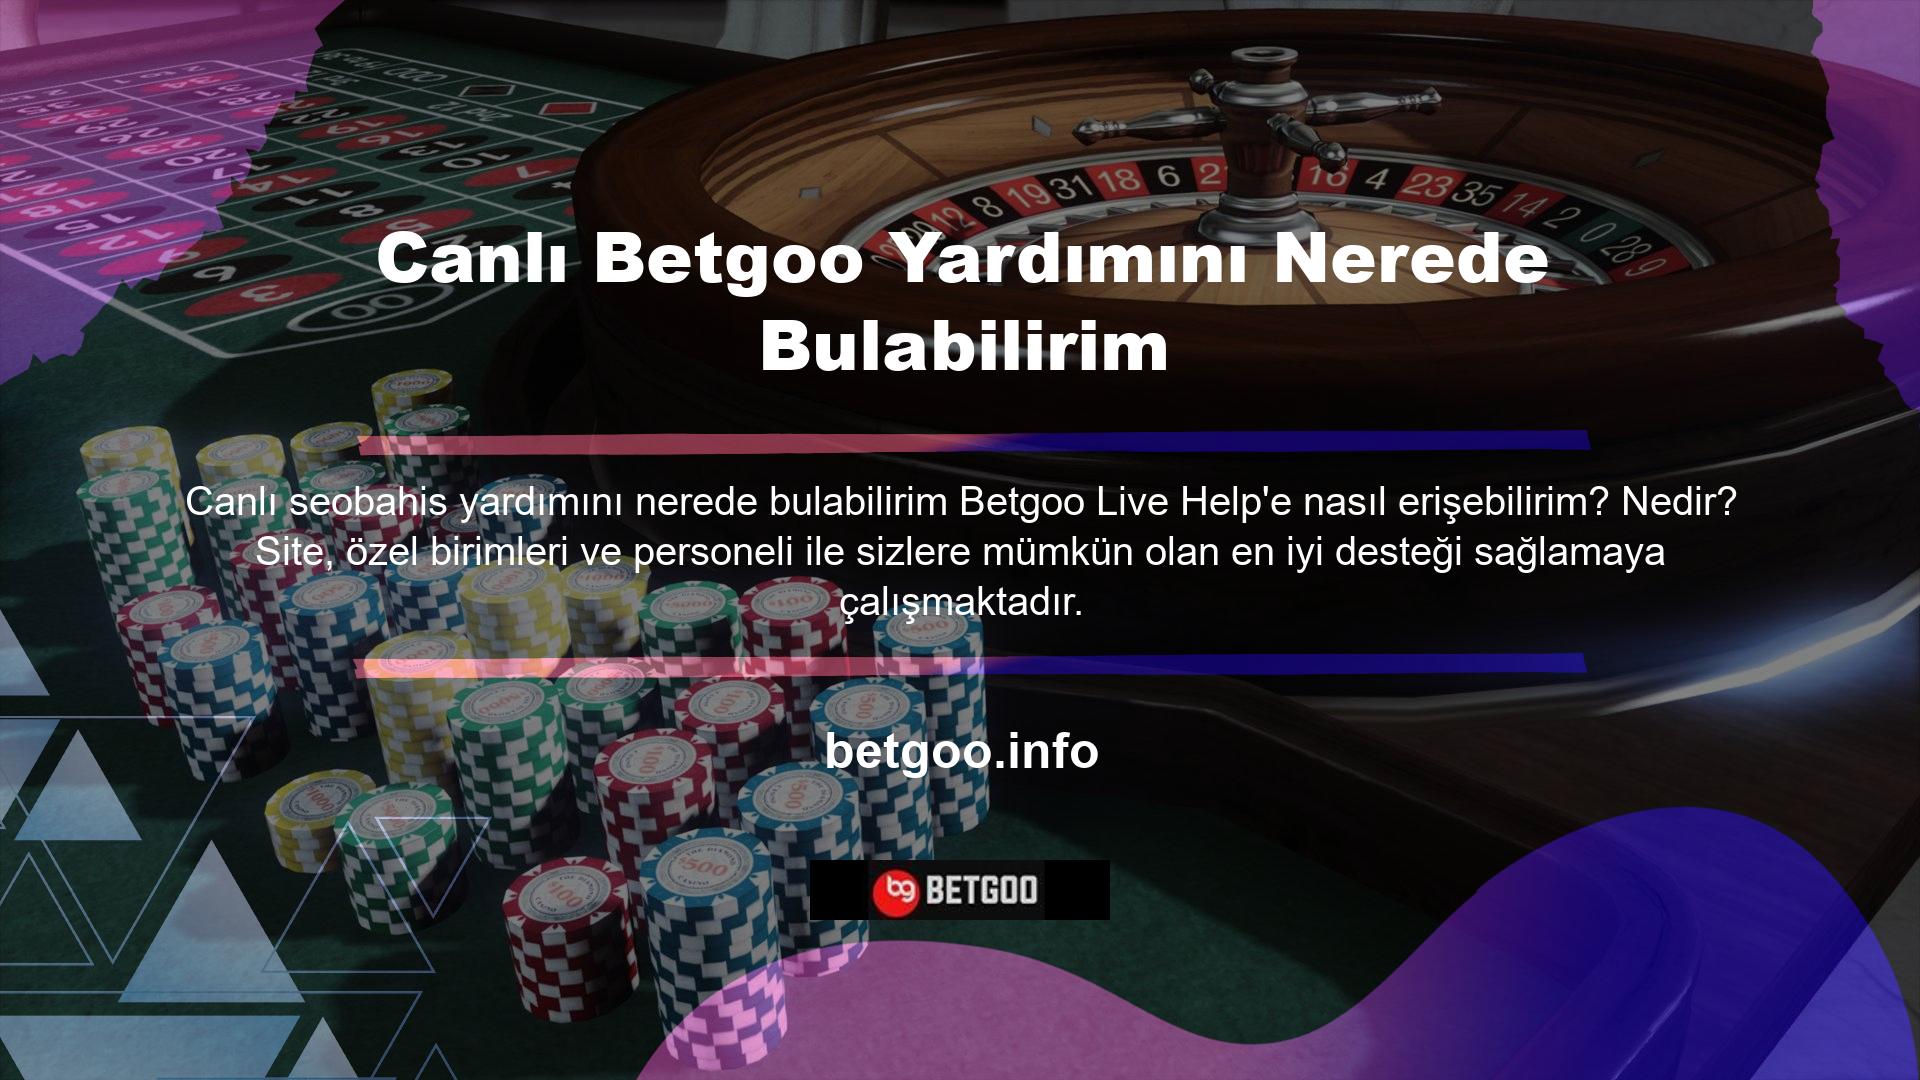 Türkçe konuşan Türkler ve Betgoo destek hattı personeli, yardım ve etkileşim sağlamak için sıklıkla hazır bulunuyor, bu da bunu yasa dışı casino siteleri arasında nadir görülen bir durum haline getiriyor